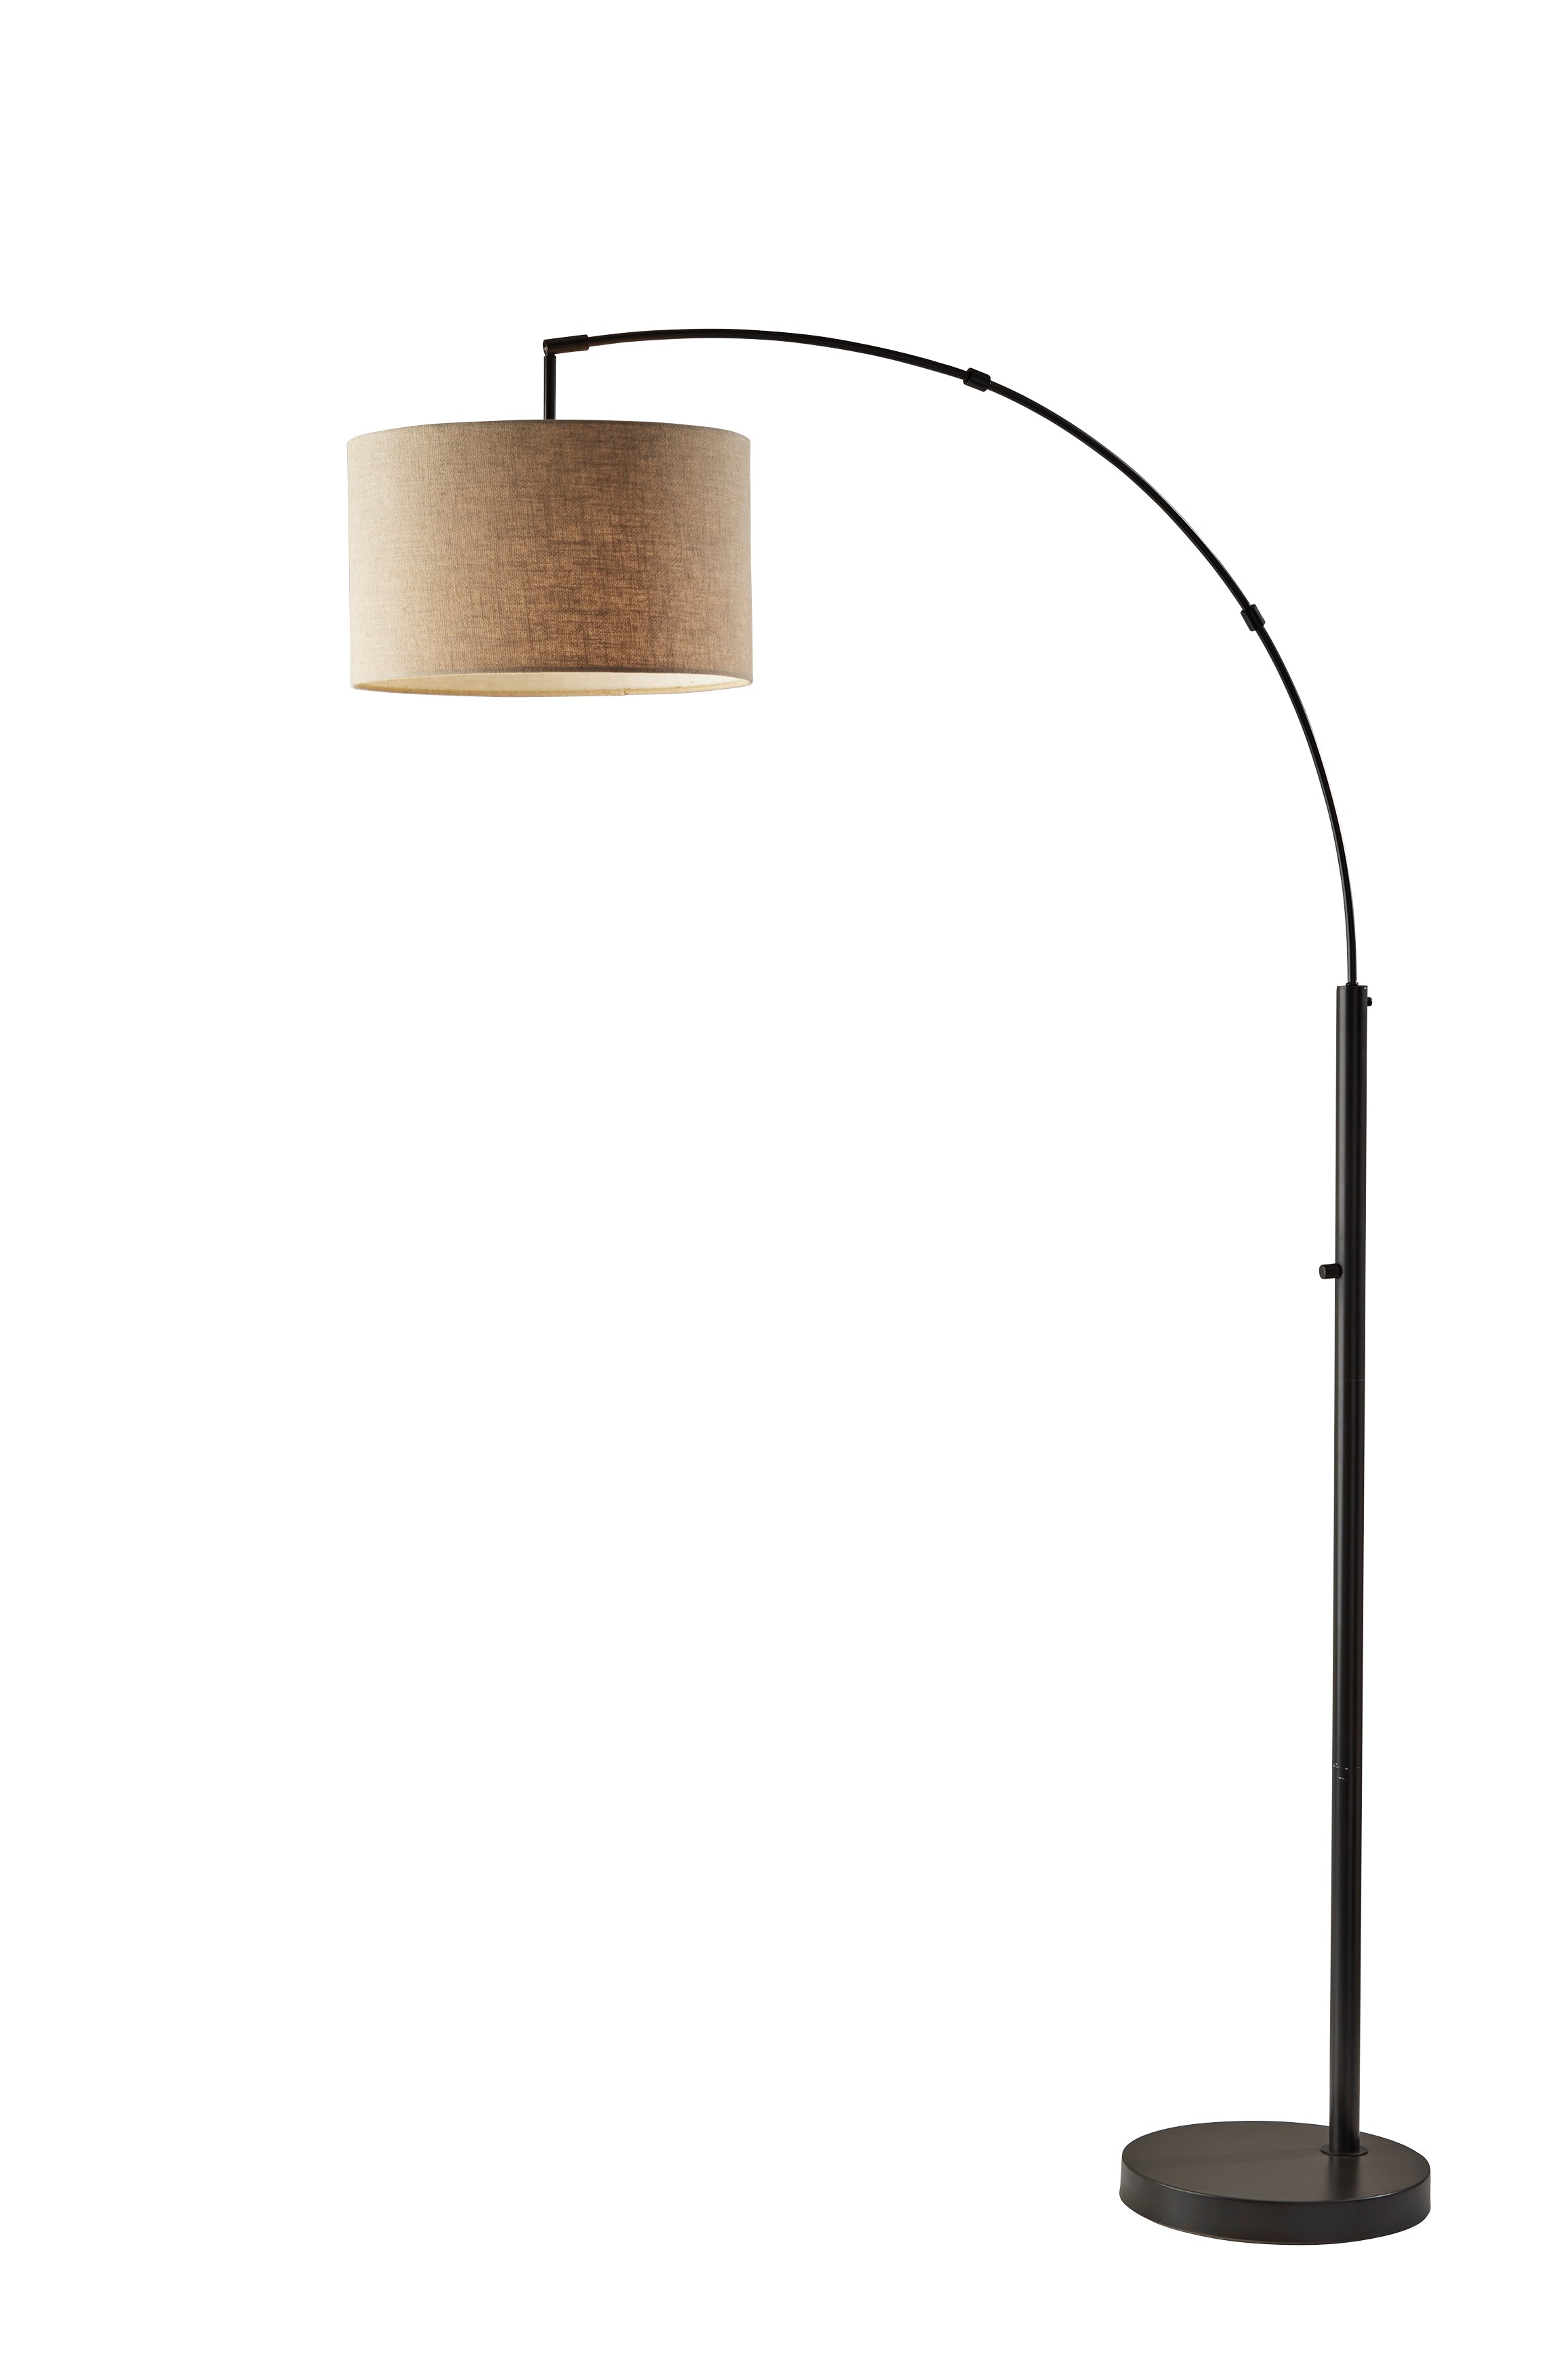 PRESTON Floor lamp Bronze - 4012-26 | ADESSO